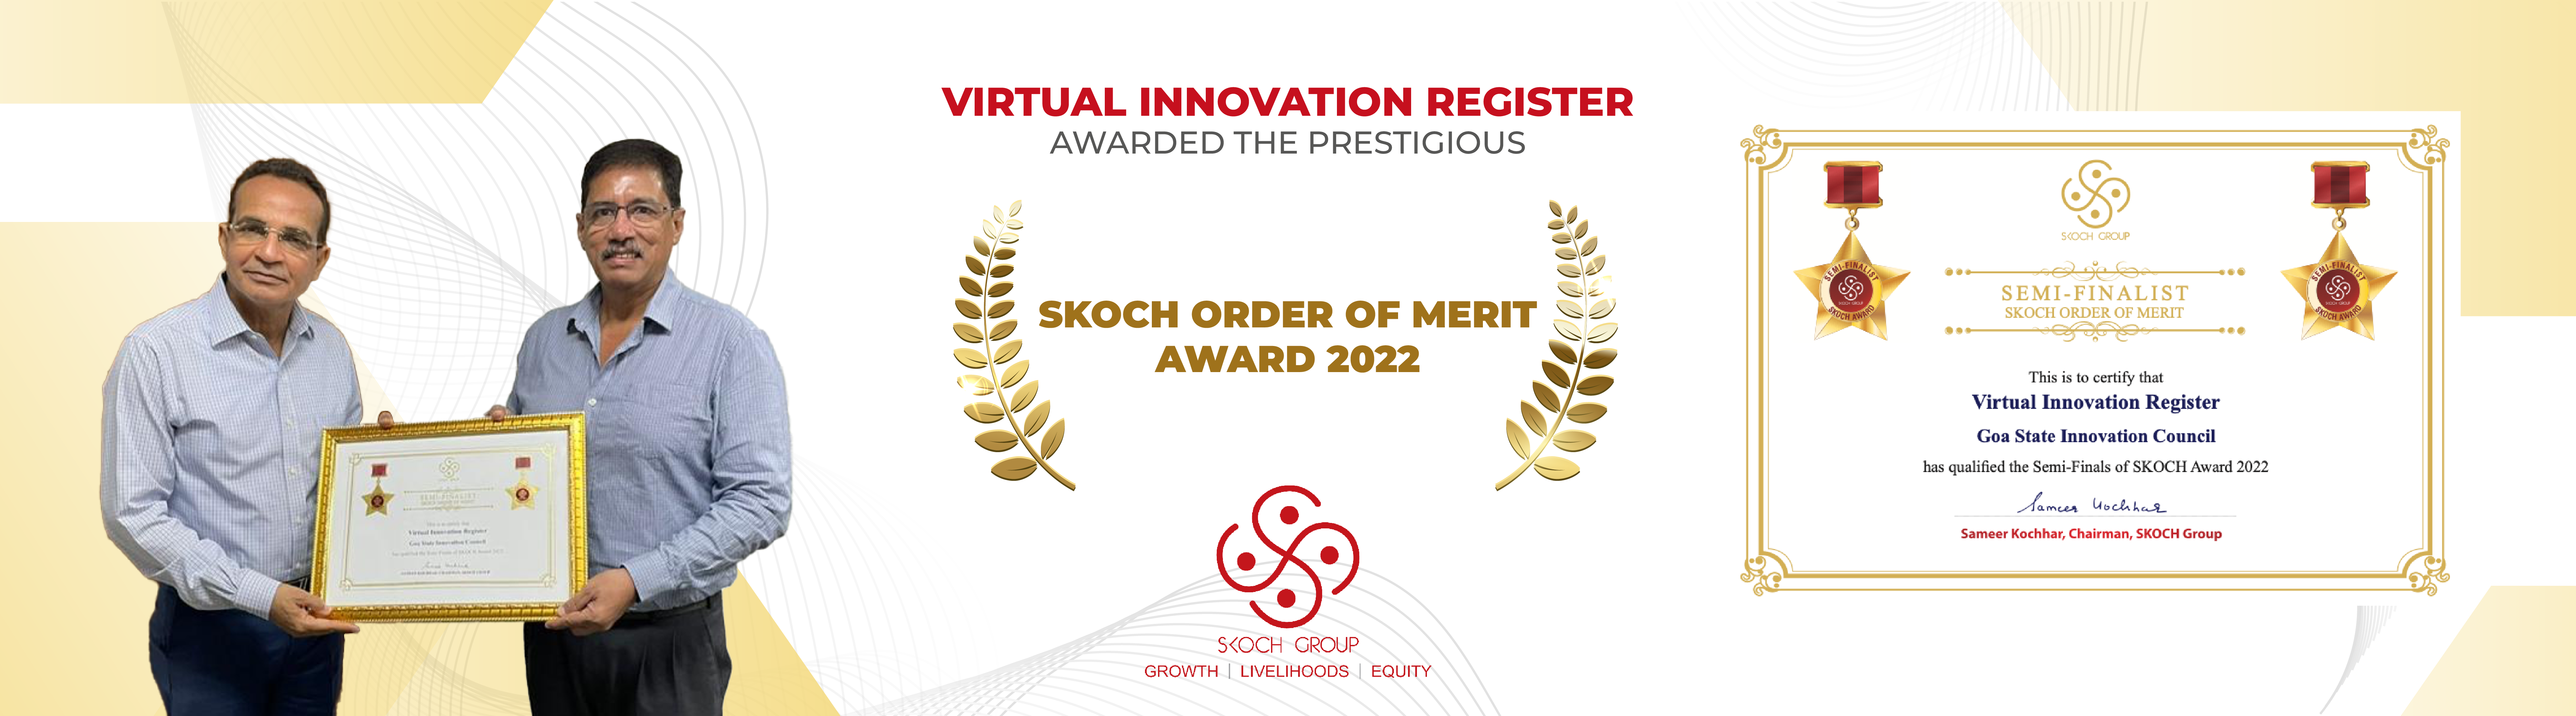 Skoch Award for VIR for 2022